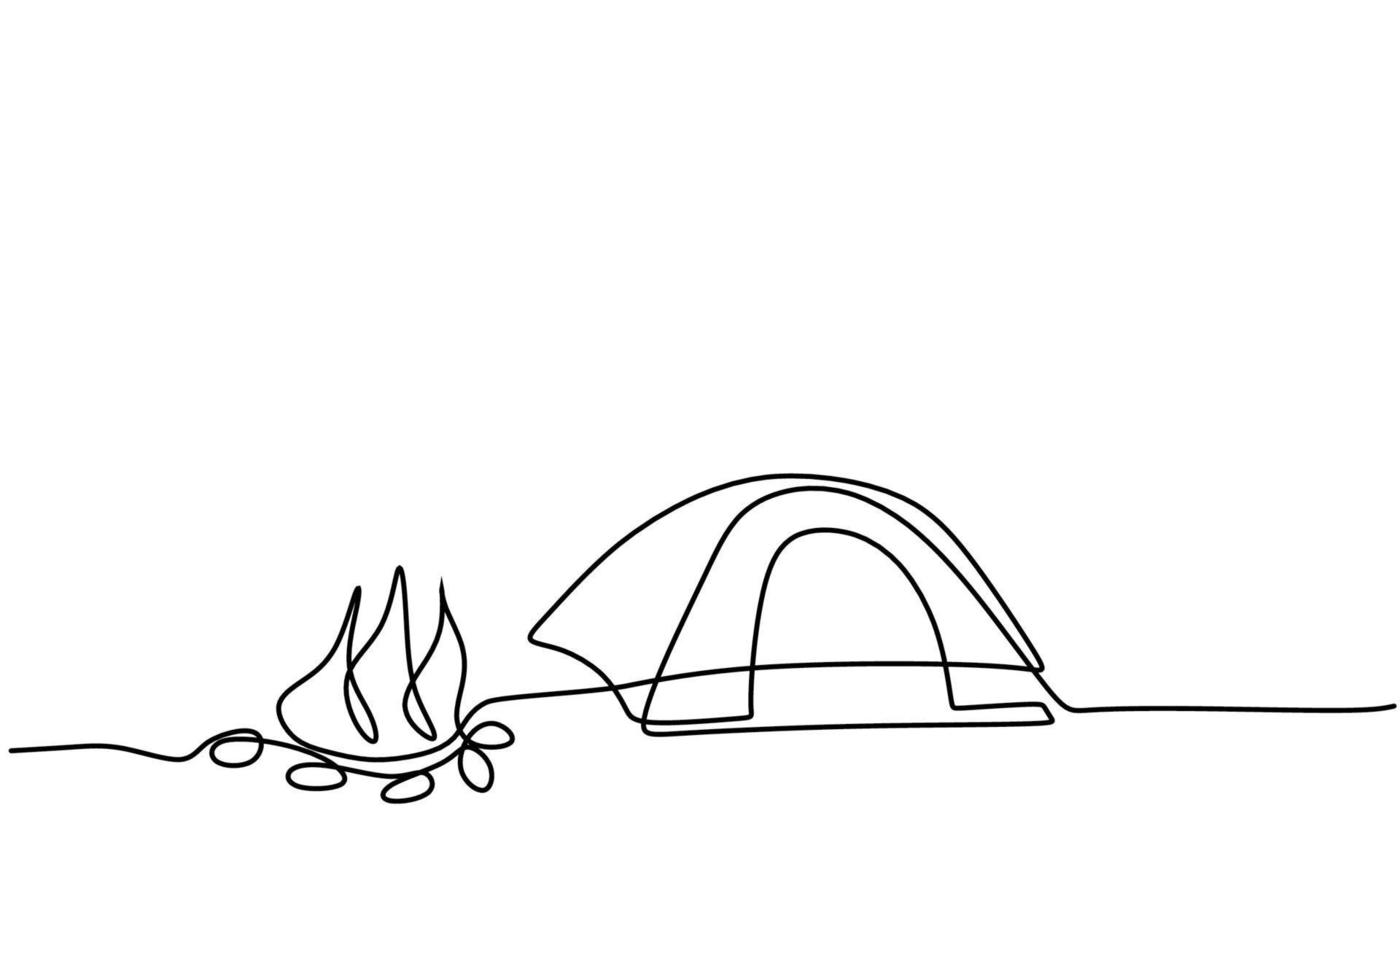 desenho de linha única contínua de uma tenda solitária nas montanhas com fogueira isolada no fundo branco. caravana de carro, trailer de viagem, campista, conceito de trailer de campista. estilo minimalista. vetor